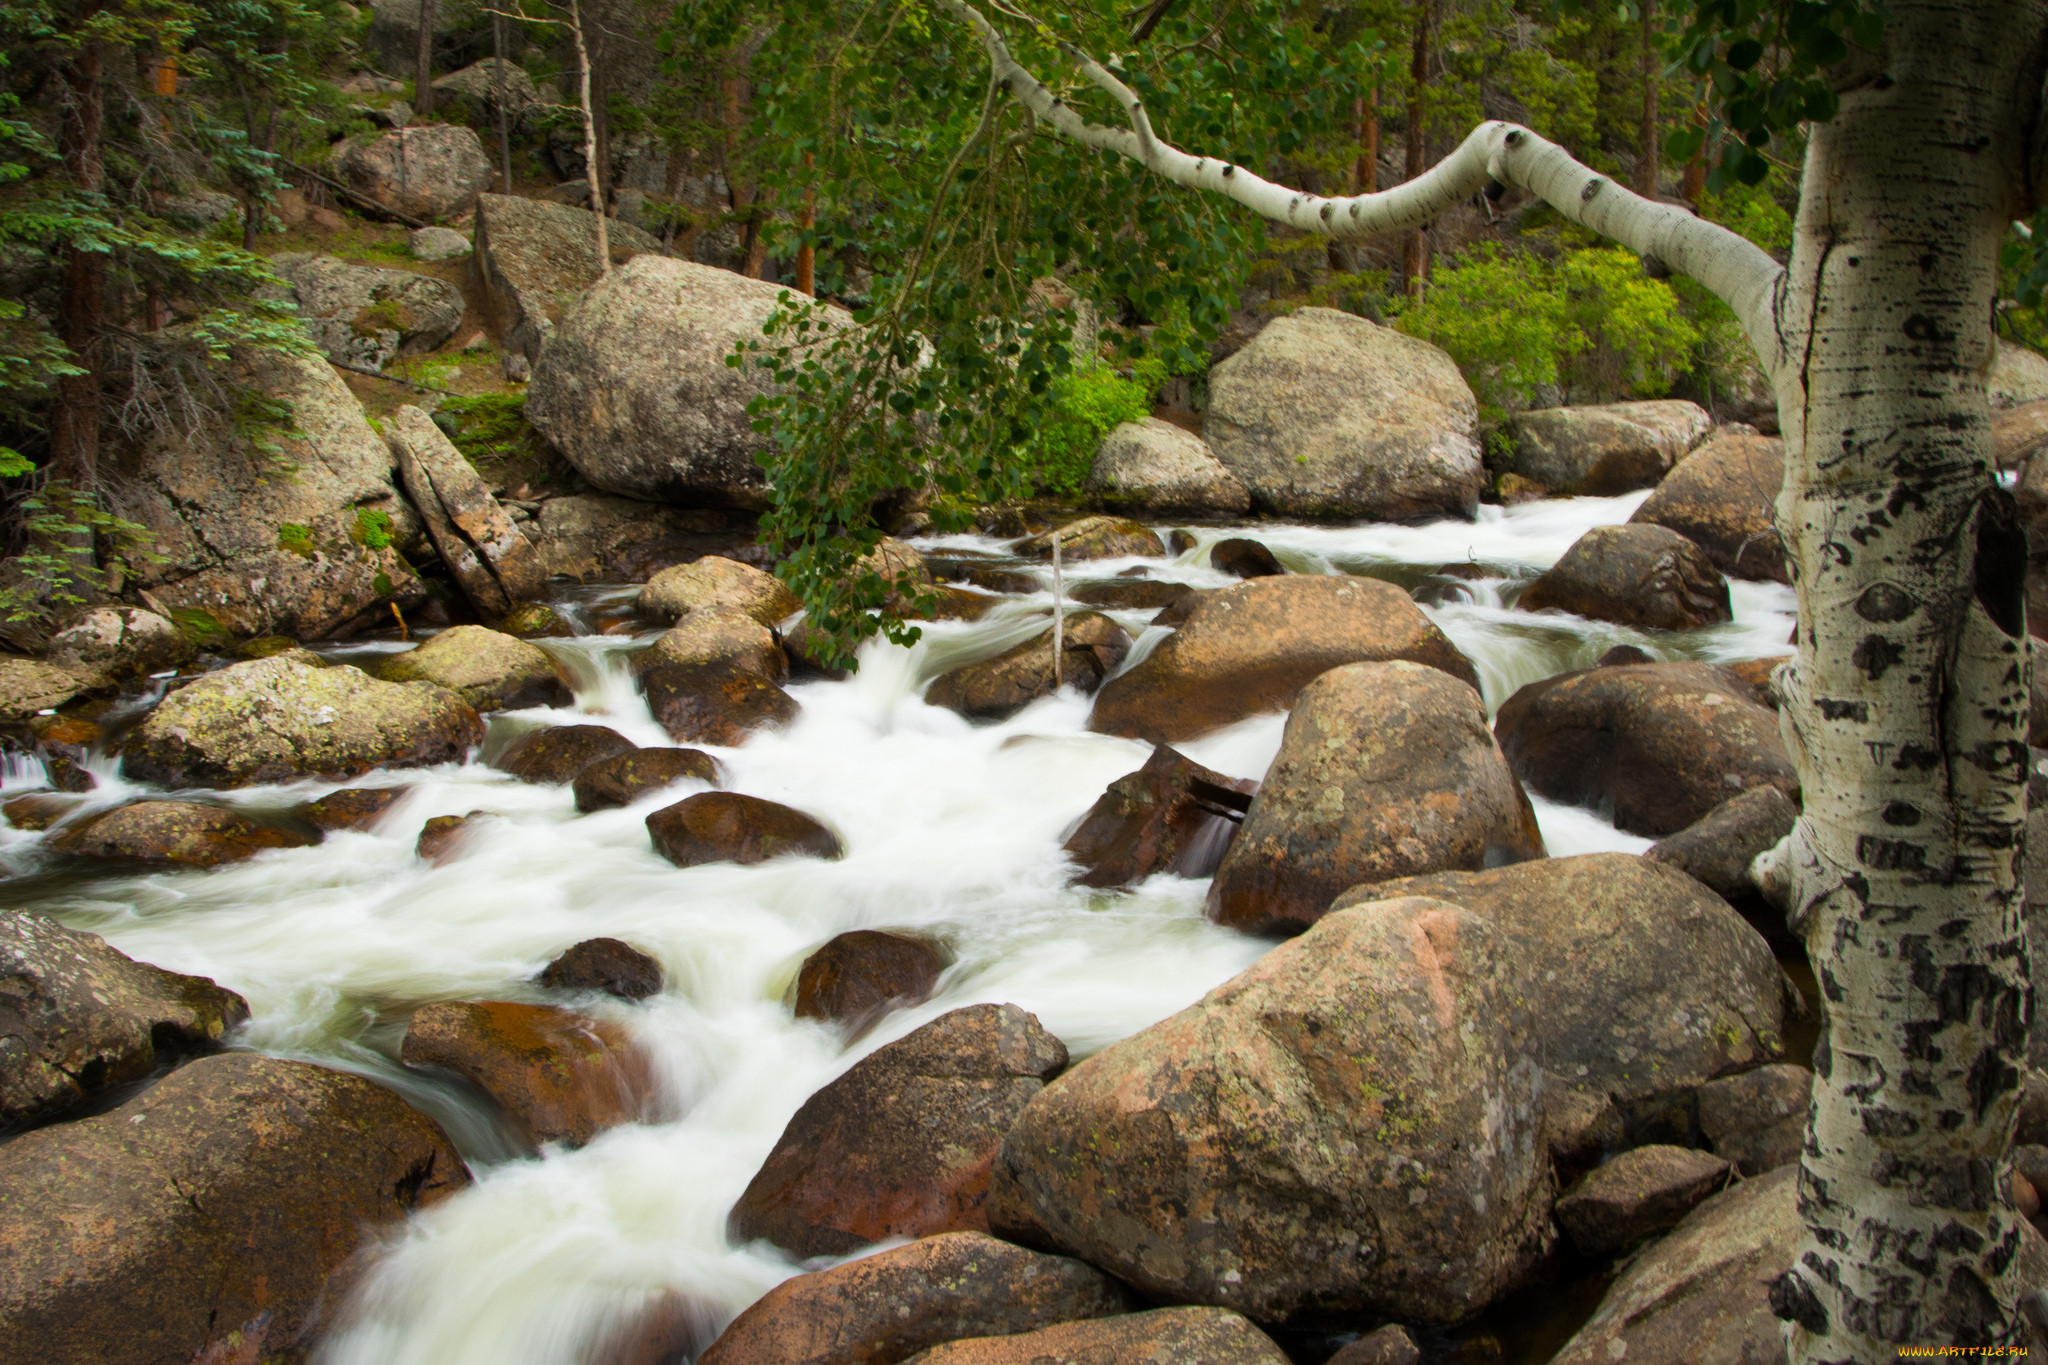 Stone river. Ручей среди камней. Речка с большими камнями. Камни в реке. Каменный берег реки.